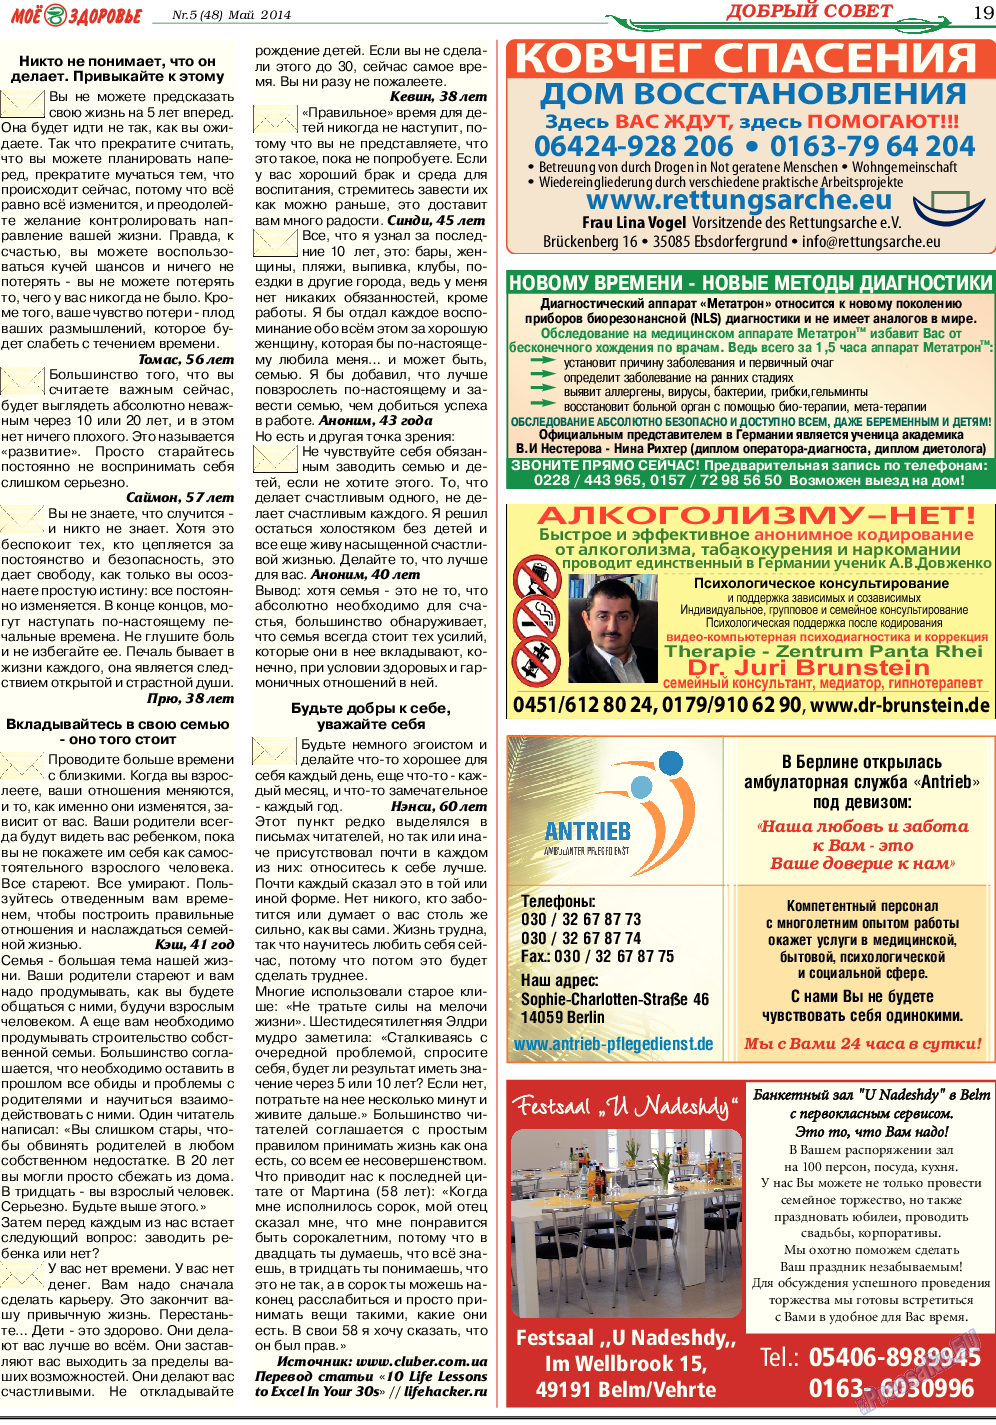 Кругозор, газета. 2014 №5 стр.19